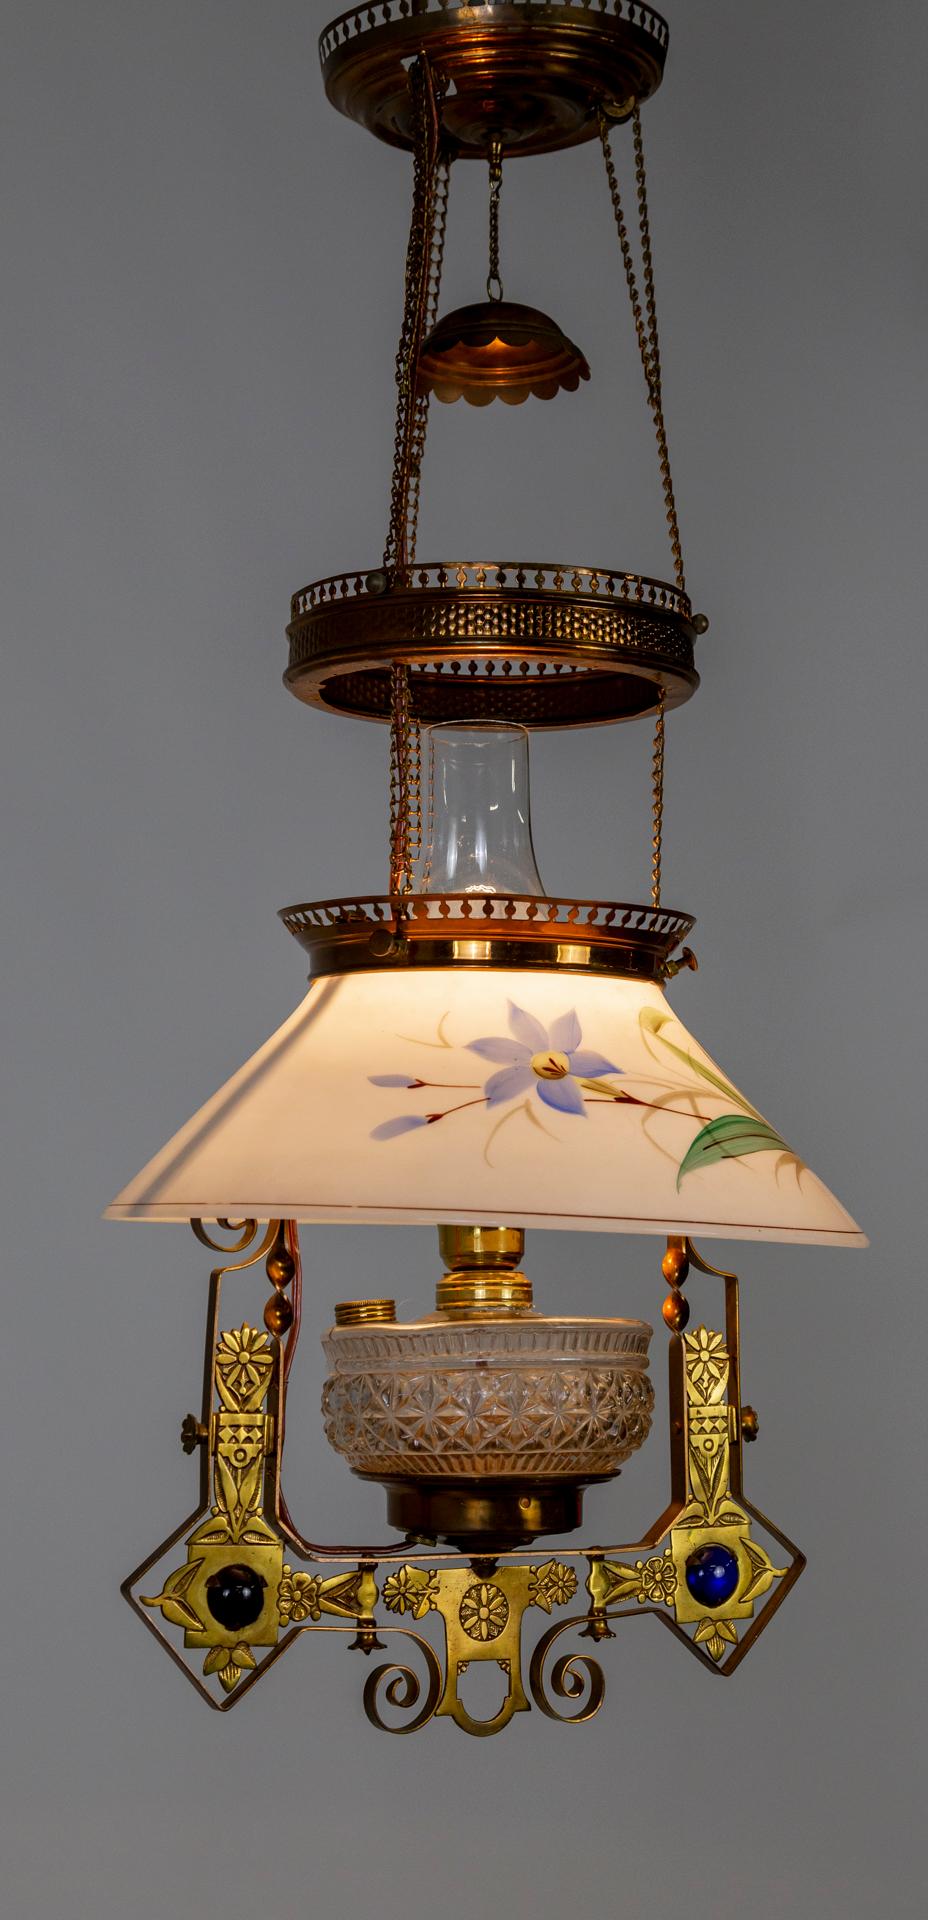 Eine lange, hängende Bibliotheks-Öllampe aus der Mitte der 1880er Jahre in einem auffälligen viktorianischen Eastlake-Stil; jetzt elektrifiziert. Ein mehrstufiges Design aus Kupfer und Messing auf Ketten, die den Schirm, den geformten Glaskörper,